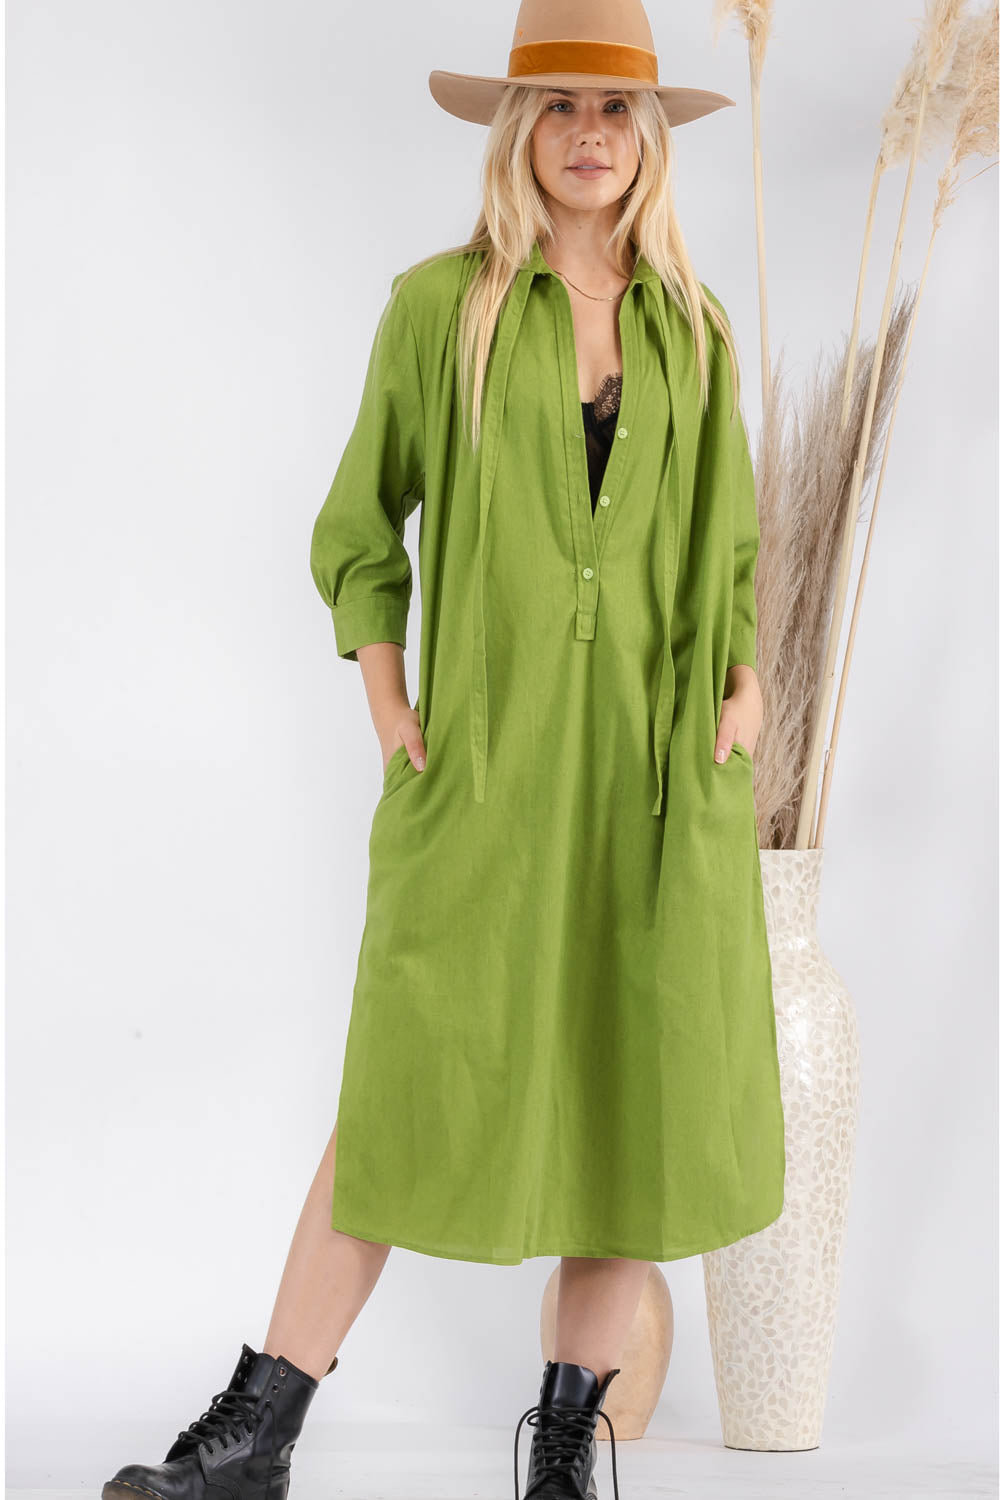 Sandy Green Linen Dress